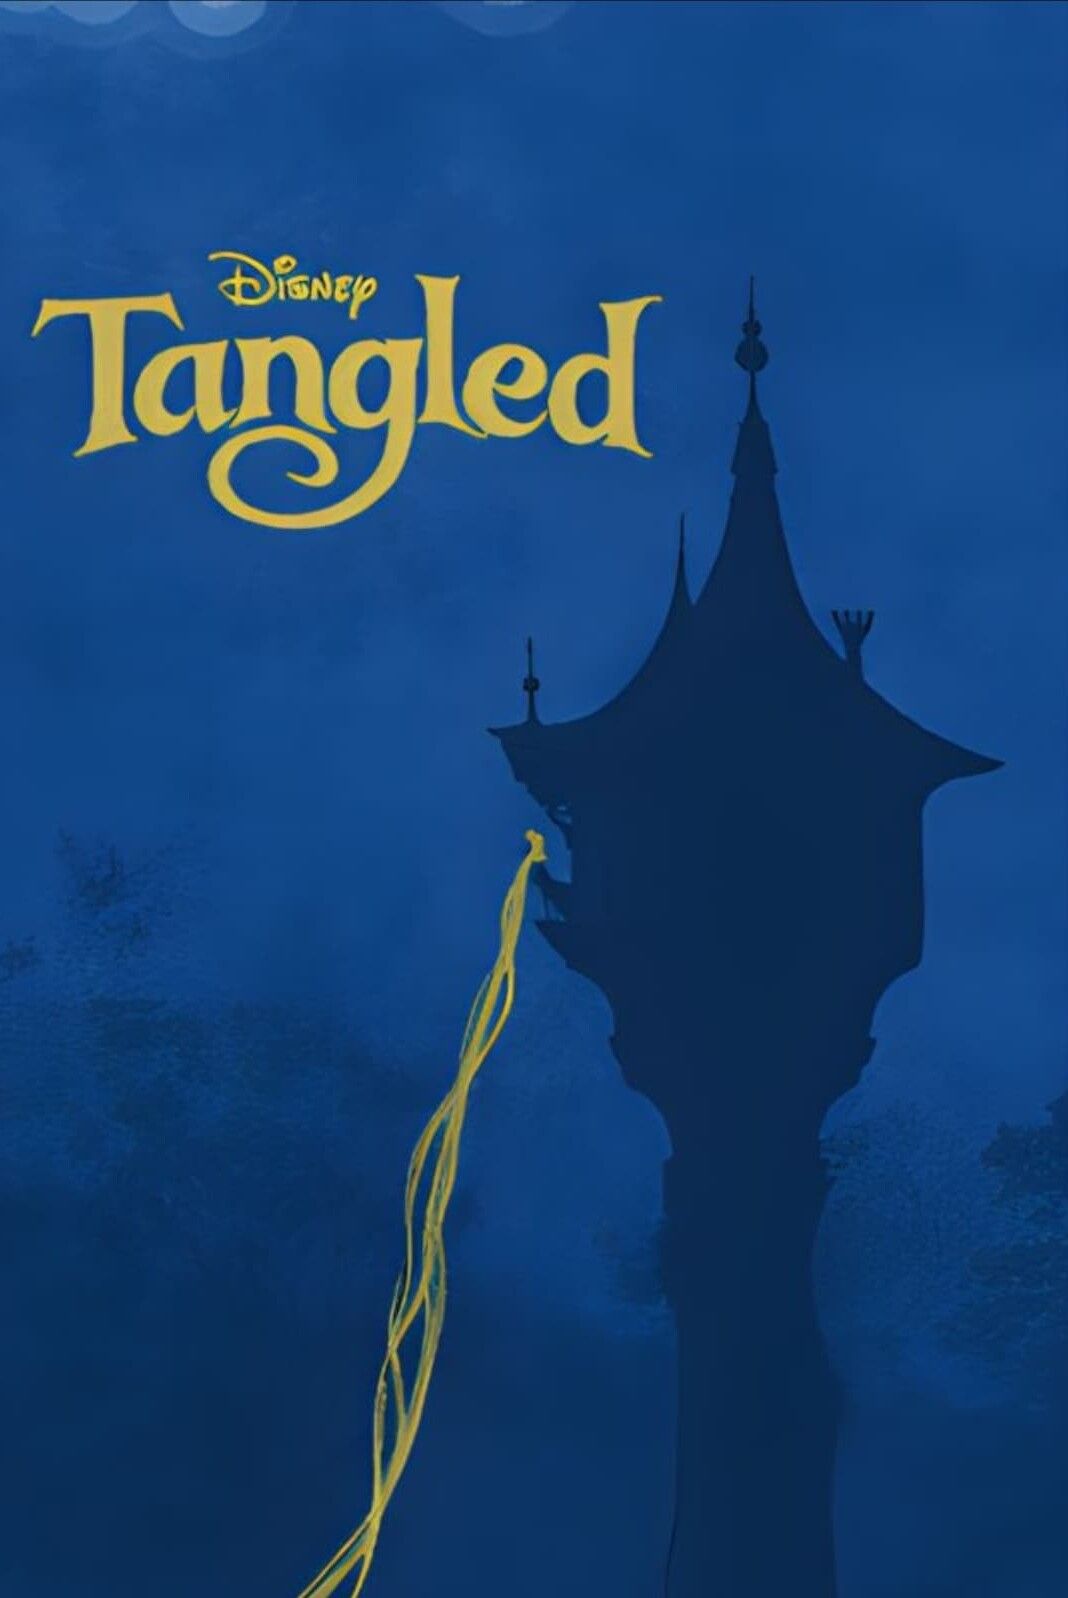 TANGLED Gets a Live-Action Remake! - KinoCheck News 